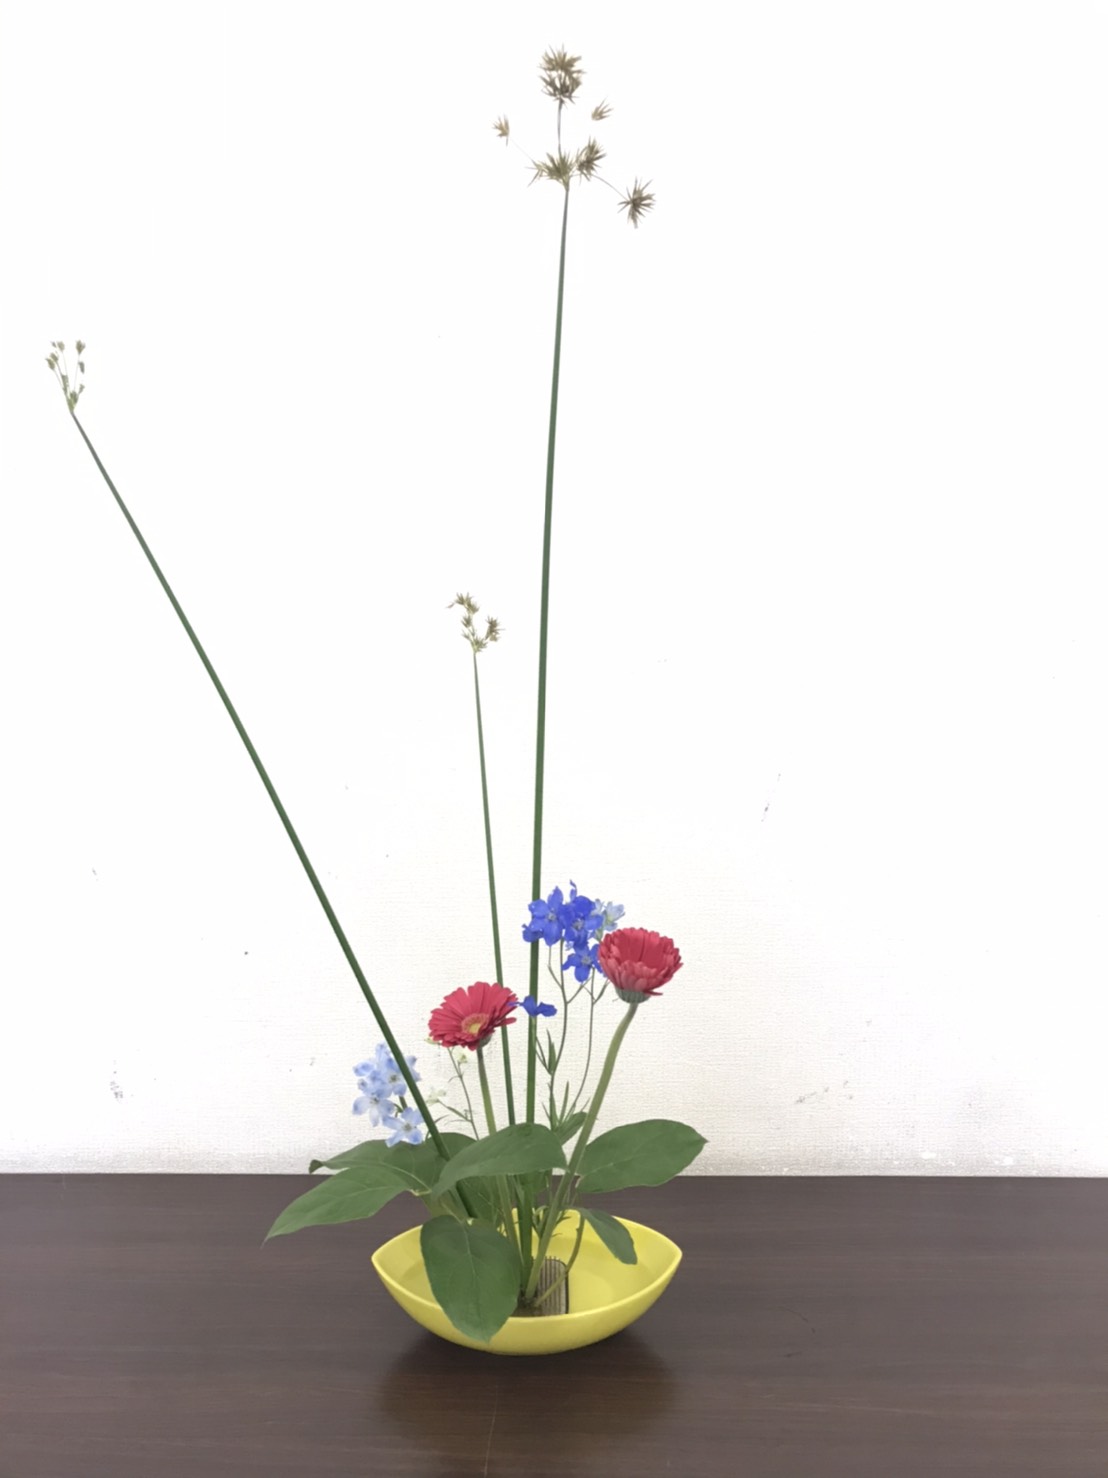 線を生かした生け方 生け花教室 華道育成会 Flower Arrangement Class Flower Arrangement Training Society